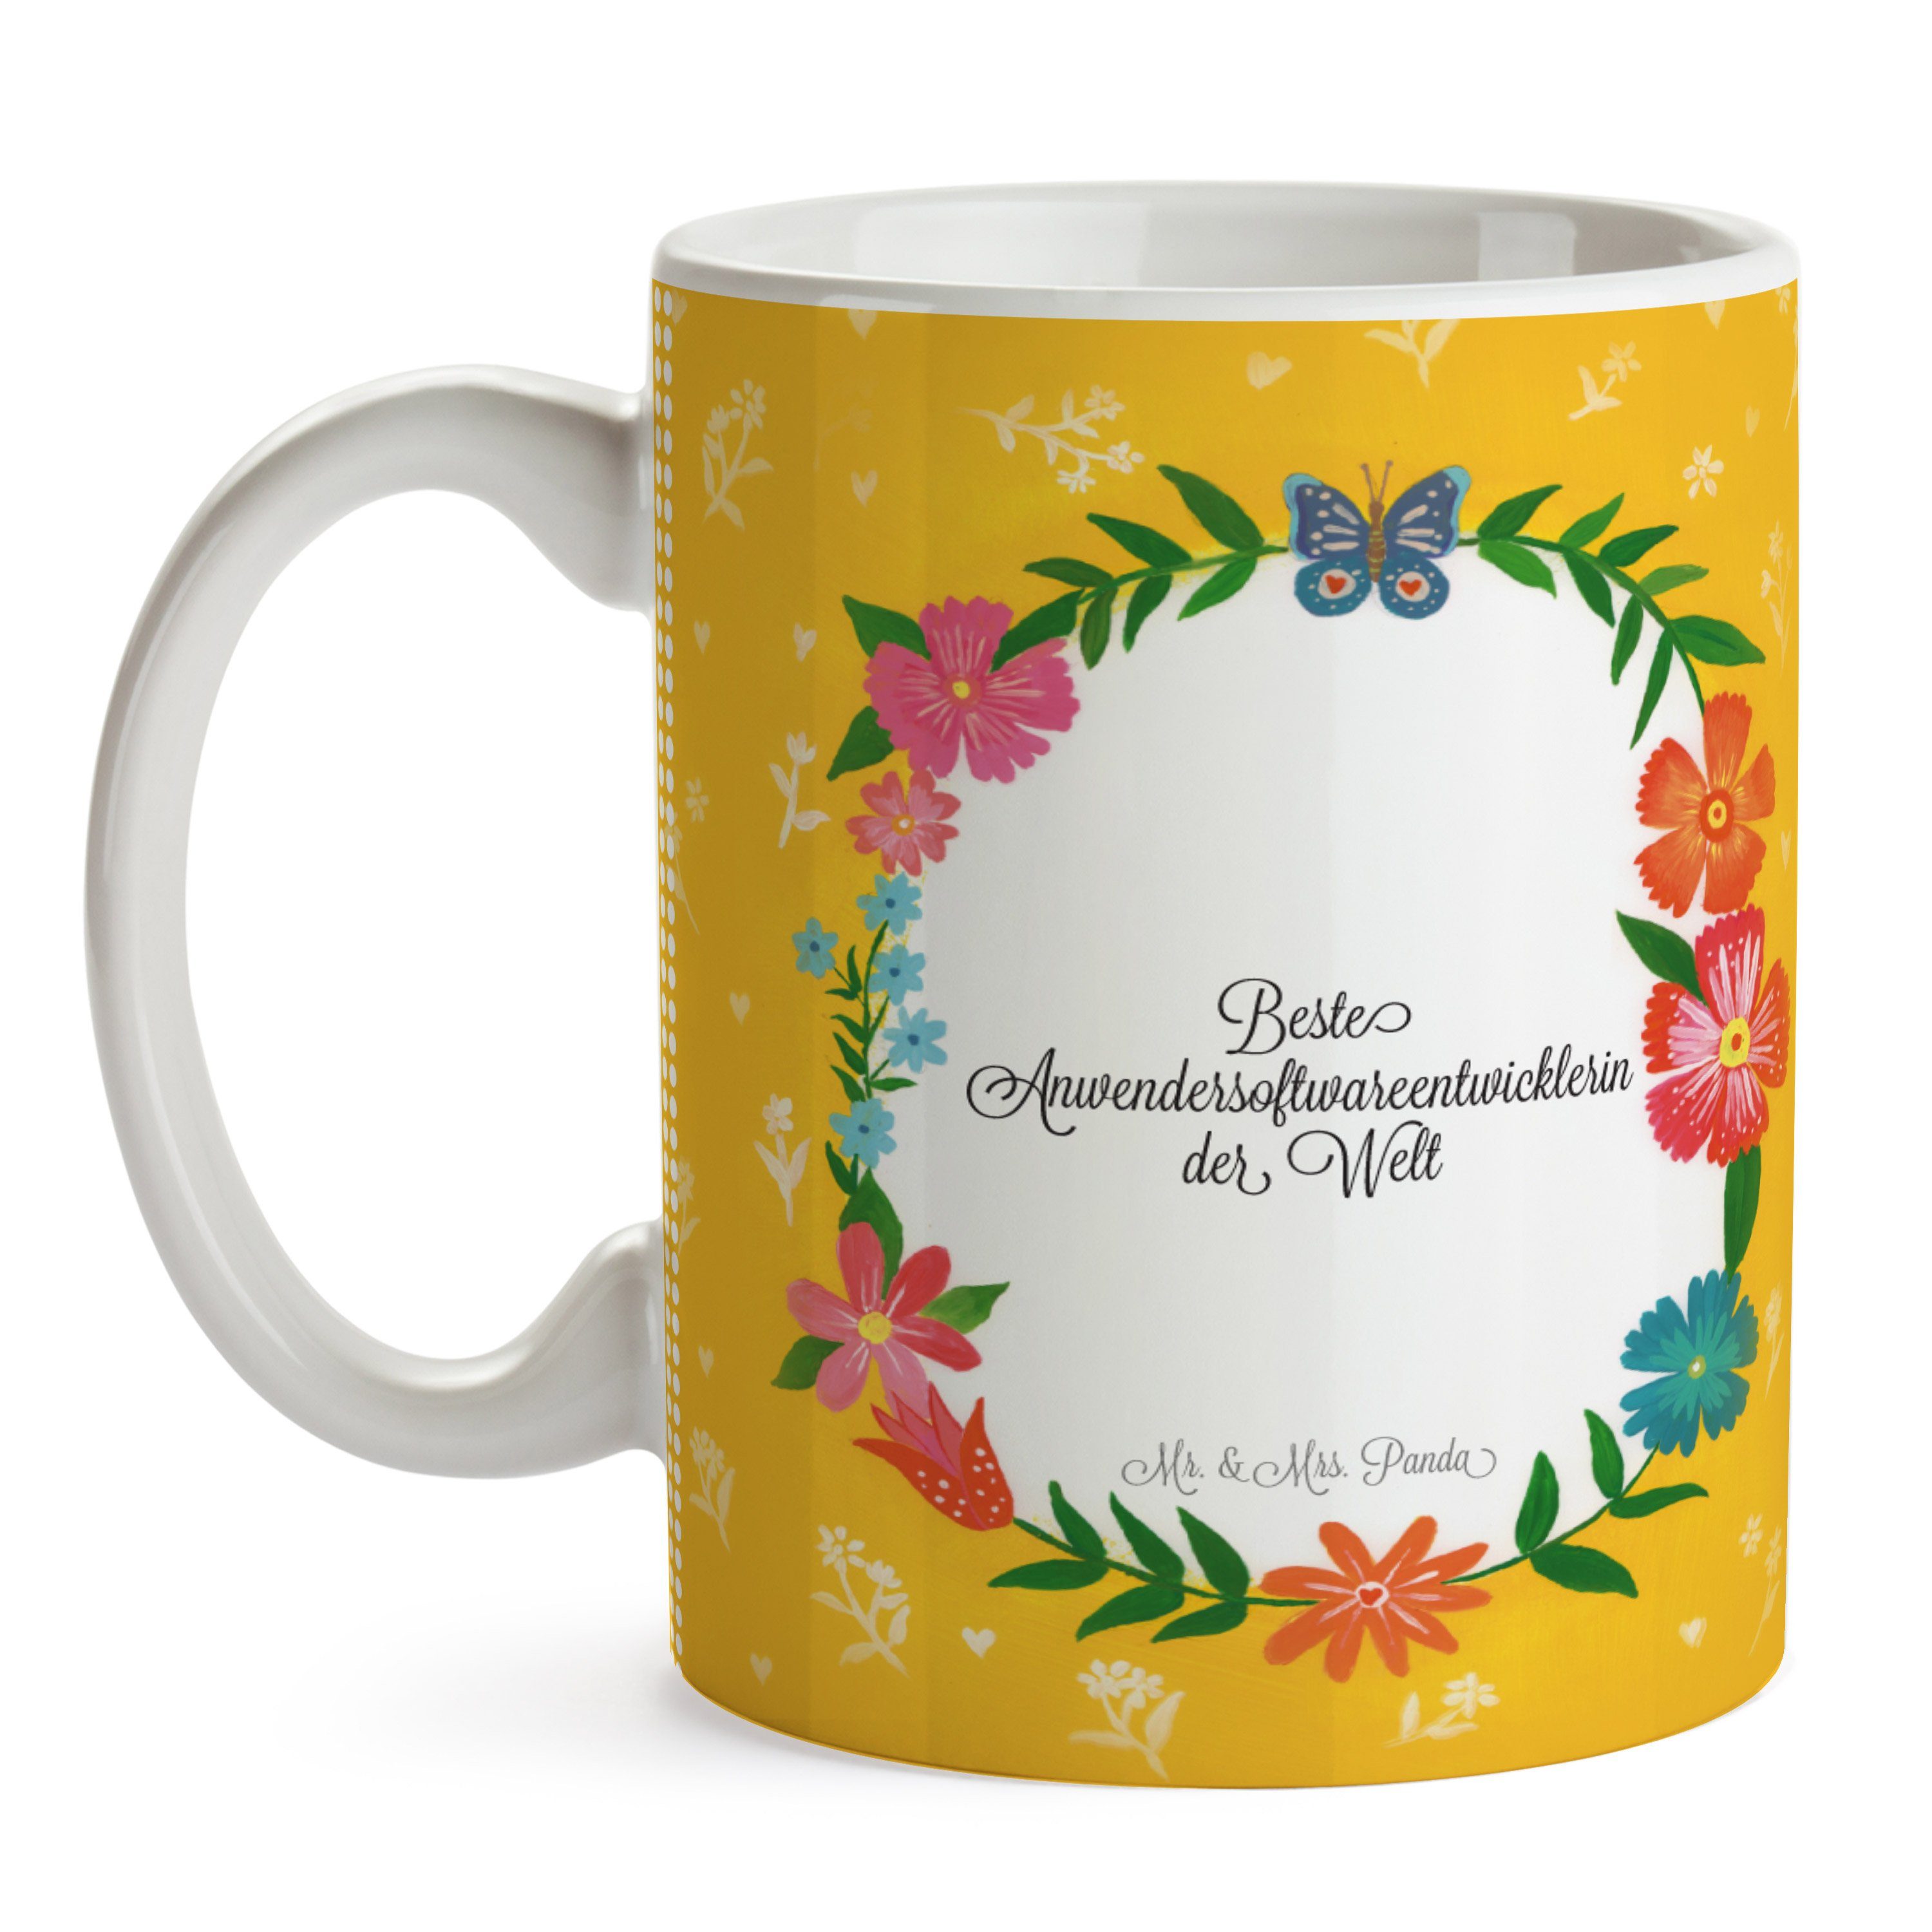 Mr. & Mrs. Panda Tasse Keramik - Anwendersoftwareentwicklerin Geschenk, Tee, Tasse Sprüche, Abschied